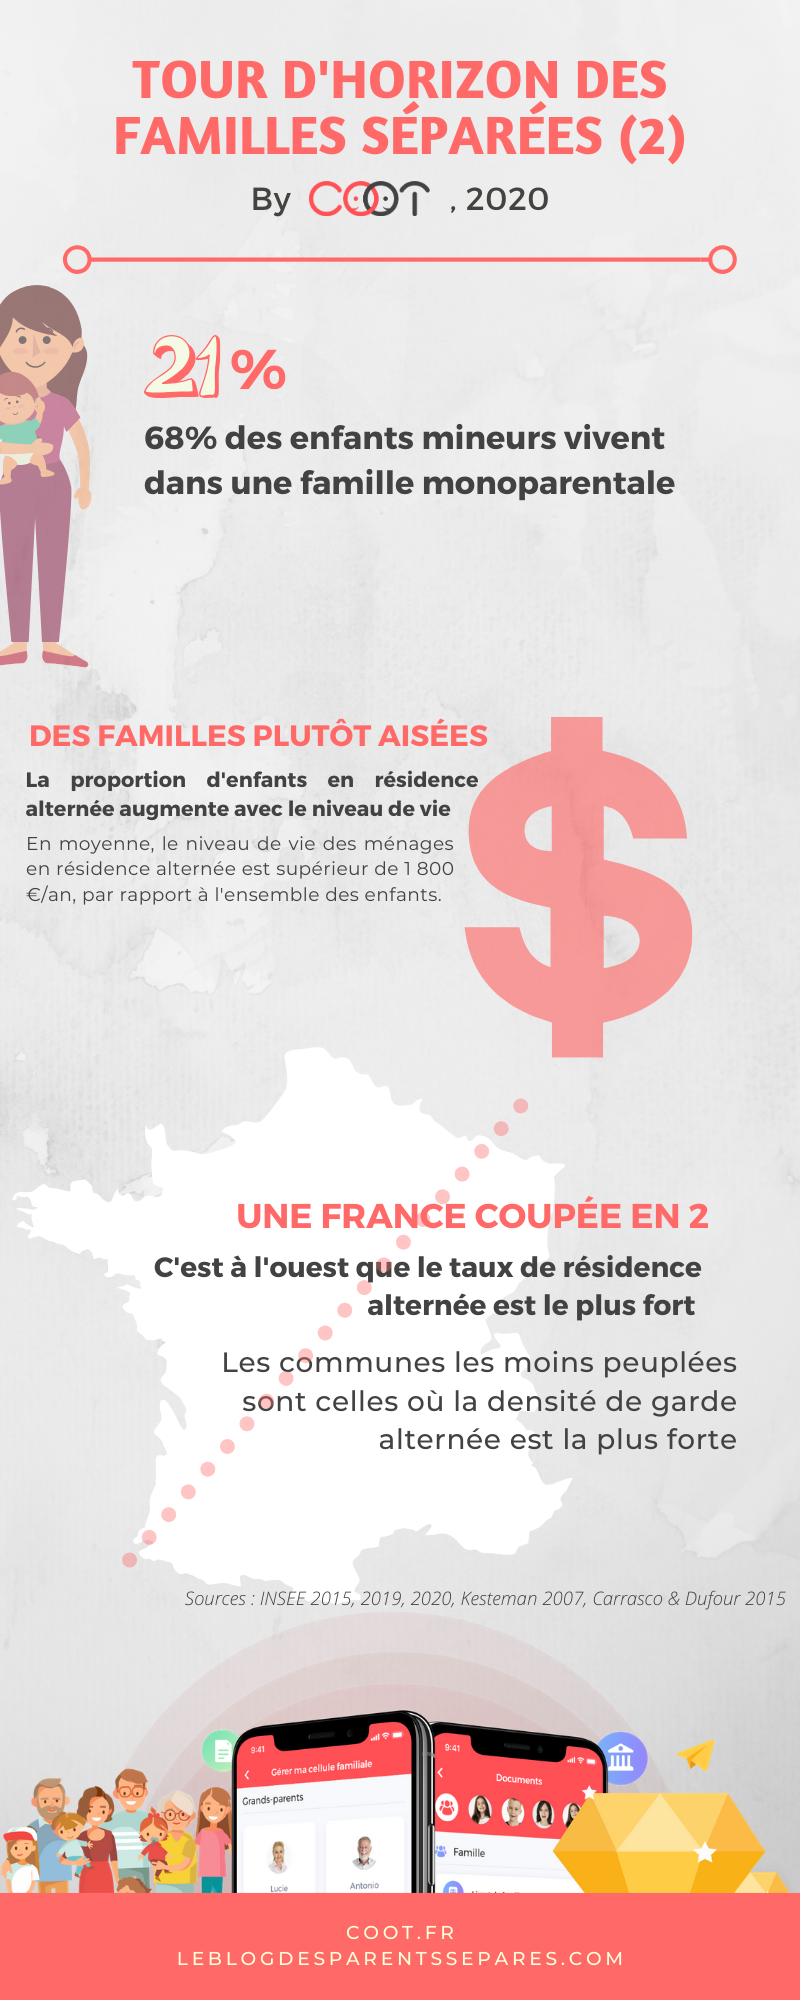 Tour d'horizon des familles séparées en France par COOT, 2020